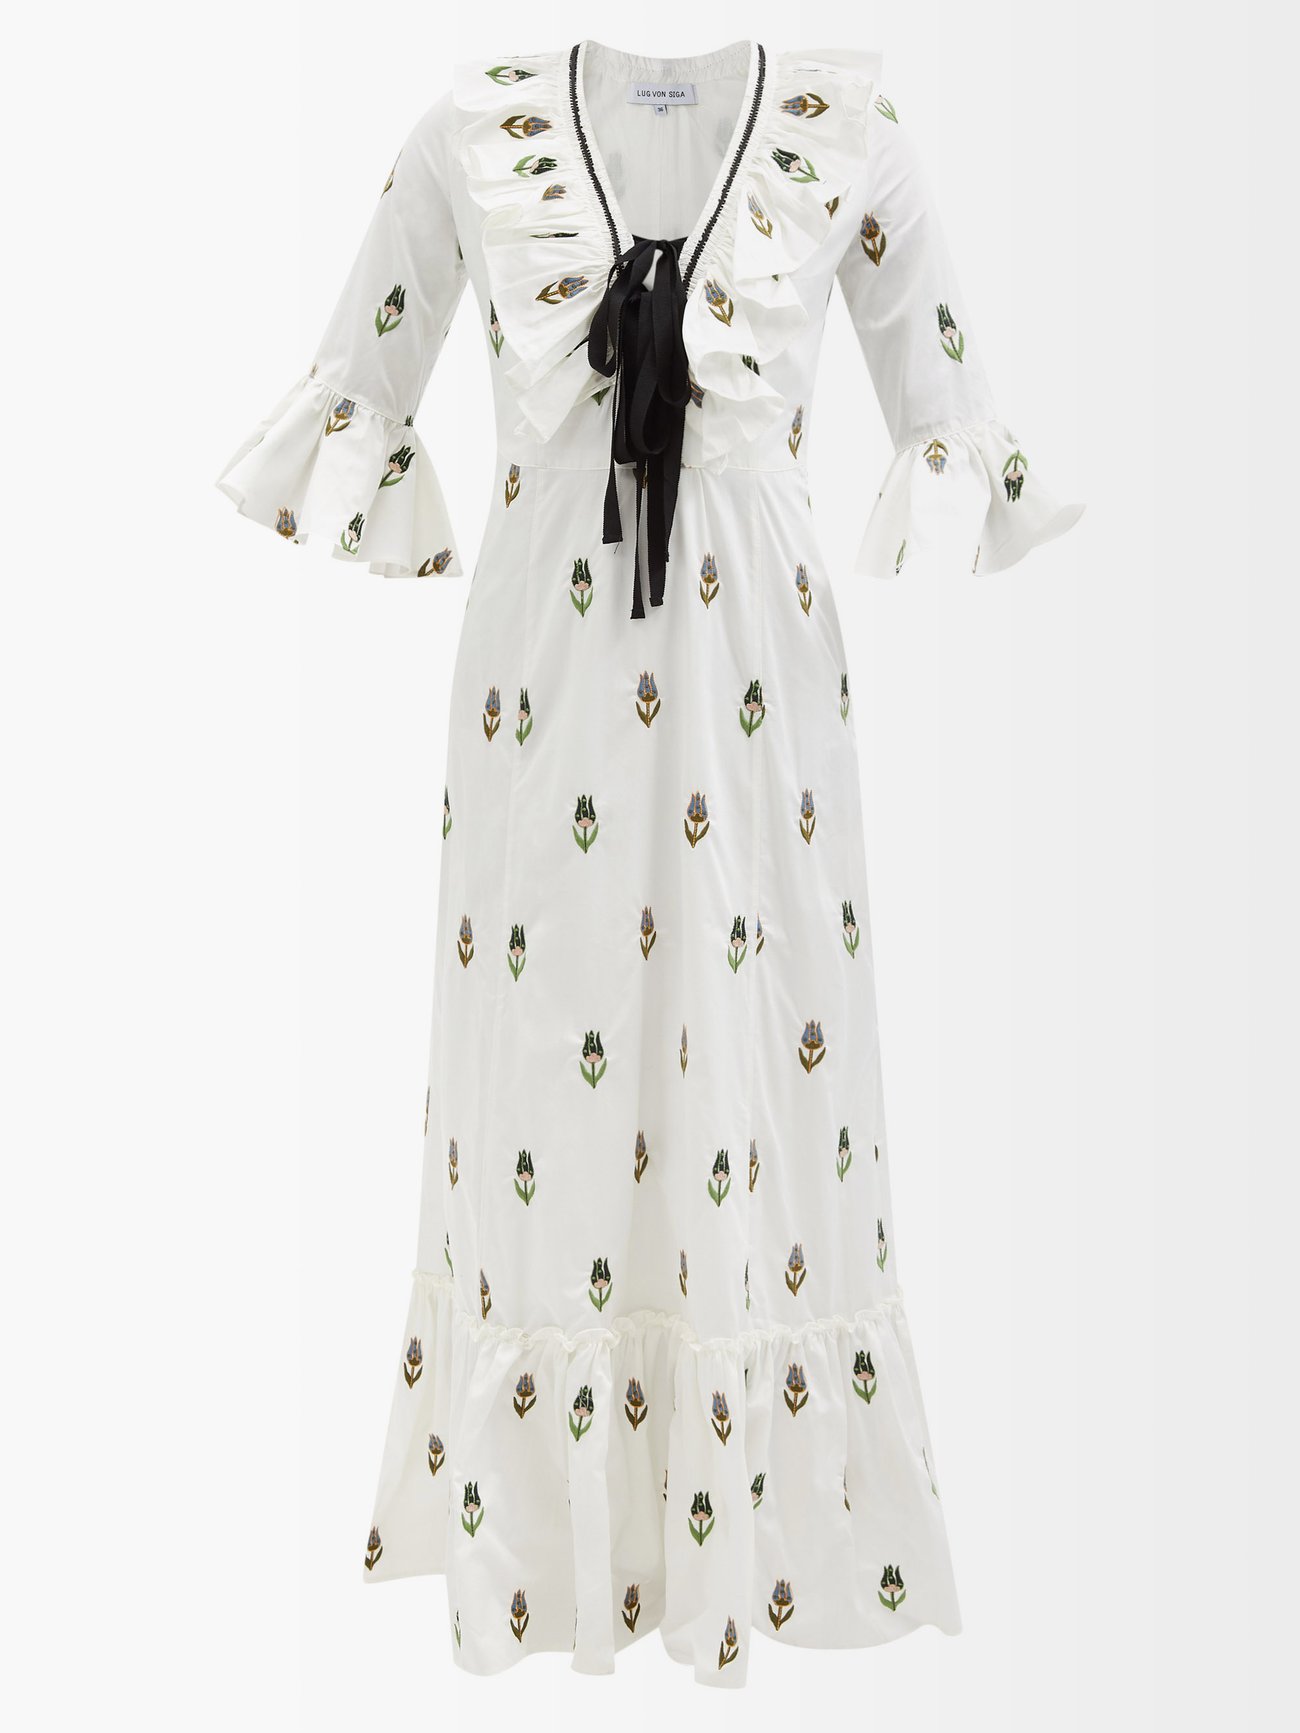 White Layla floral-embroidered cotton-poplin dress | Lug Von Siga ...